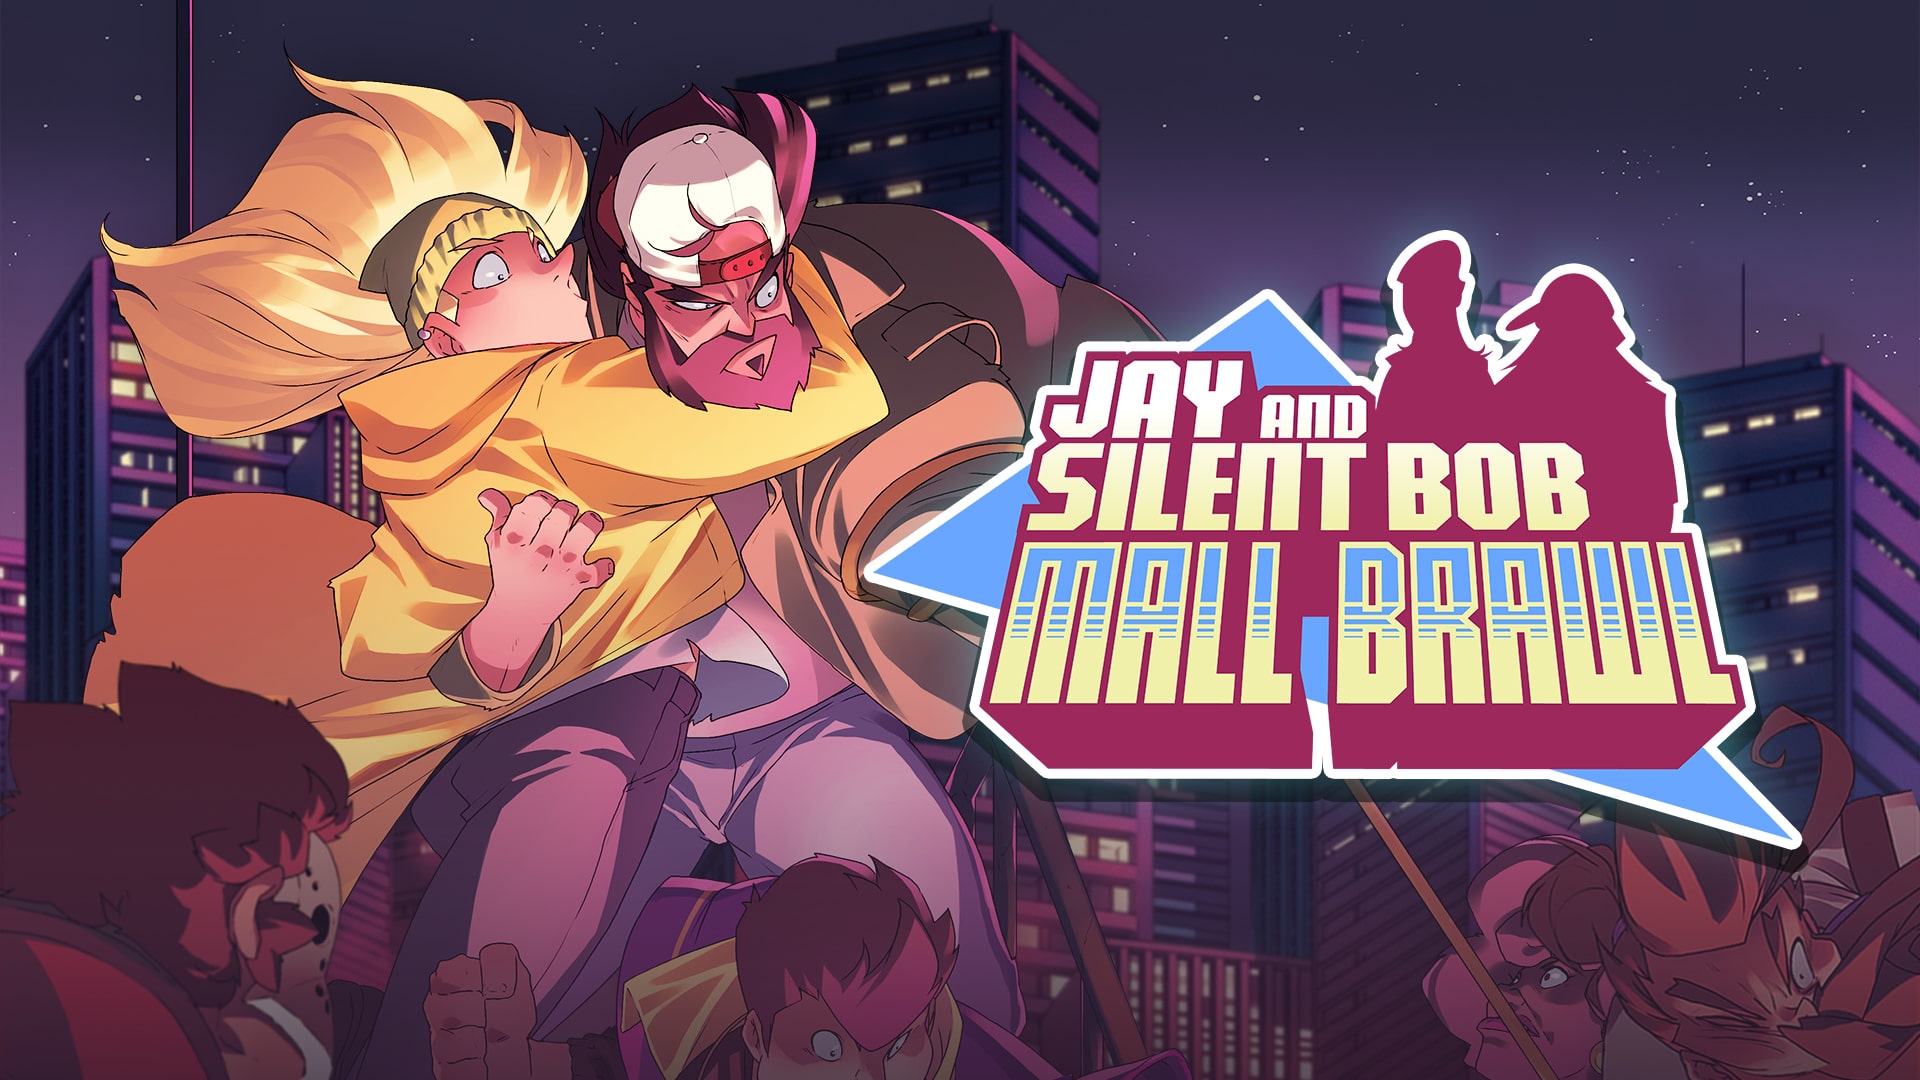 Jay and Silent Bob Mall Brawl annunciato il videogioco